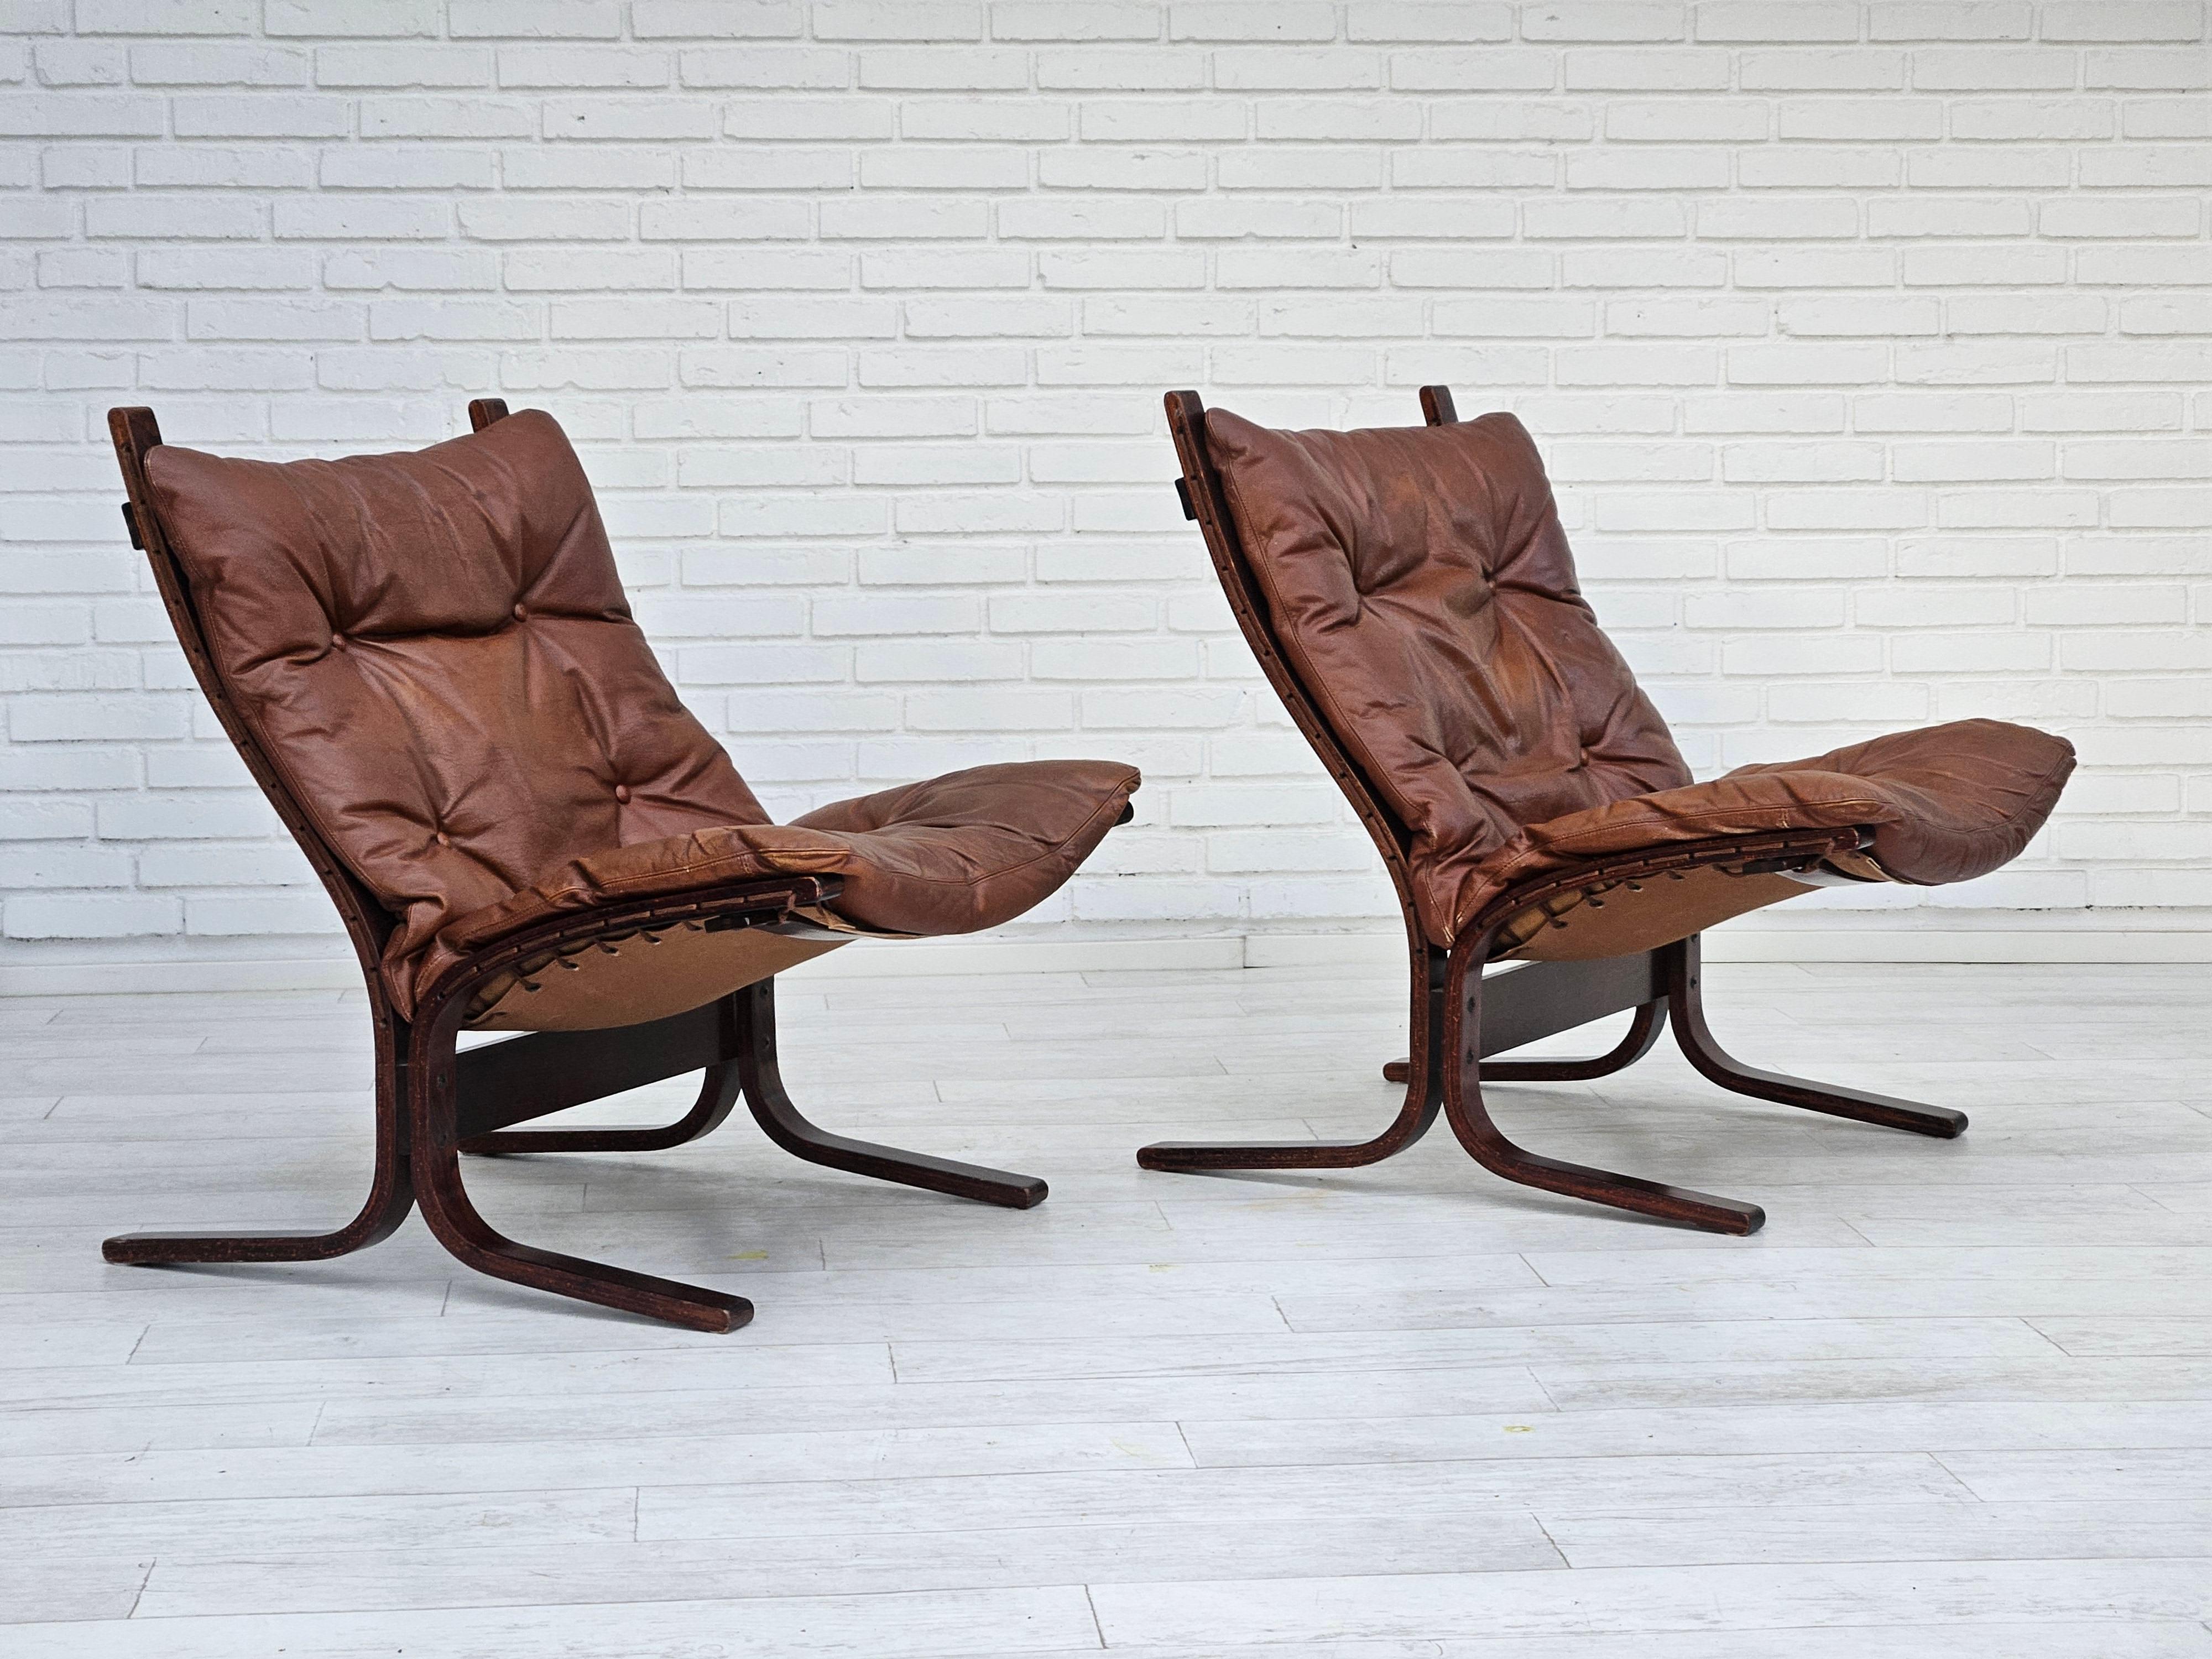 Scandinave moderne Années 1970, design norvégien d'Ingmar Relling, modèle Siesta, paire de deux chaises, o